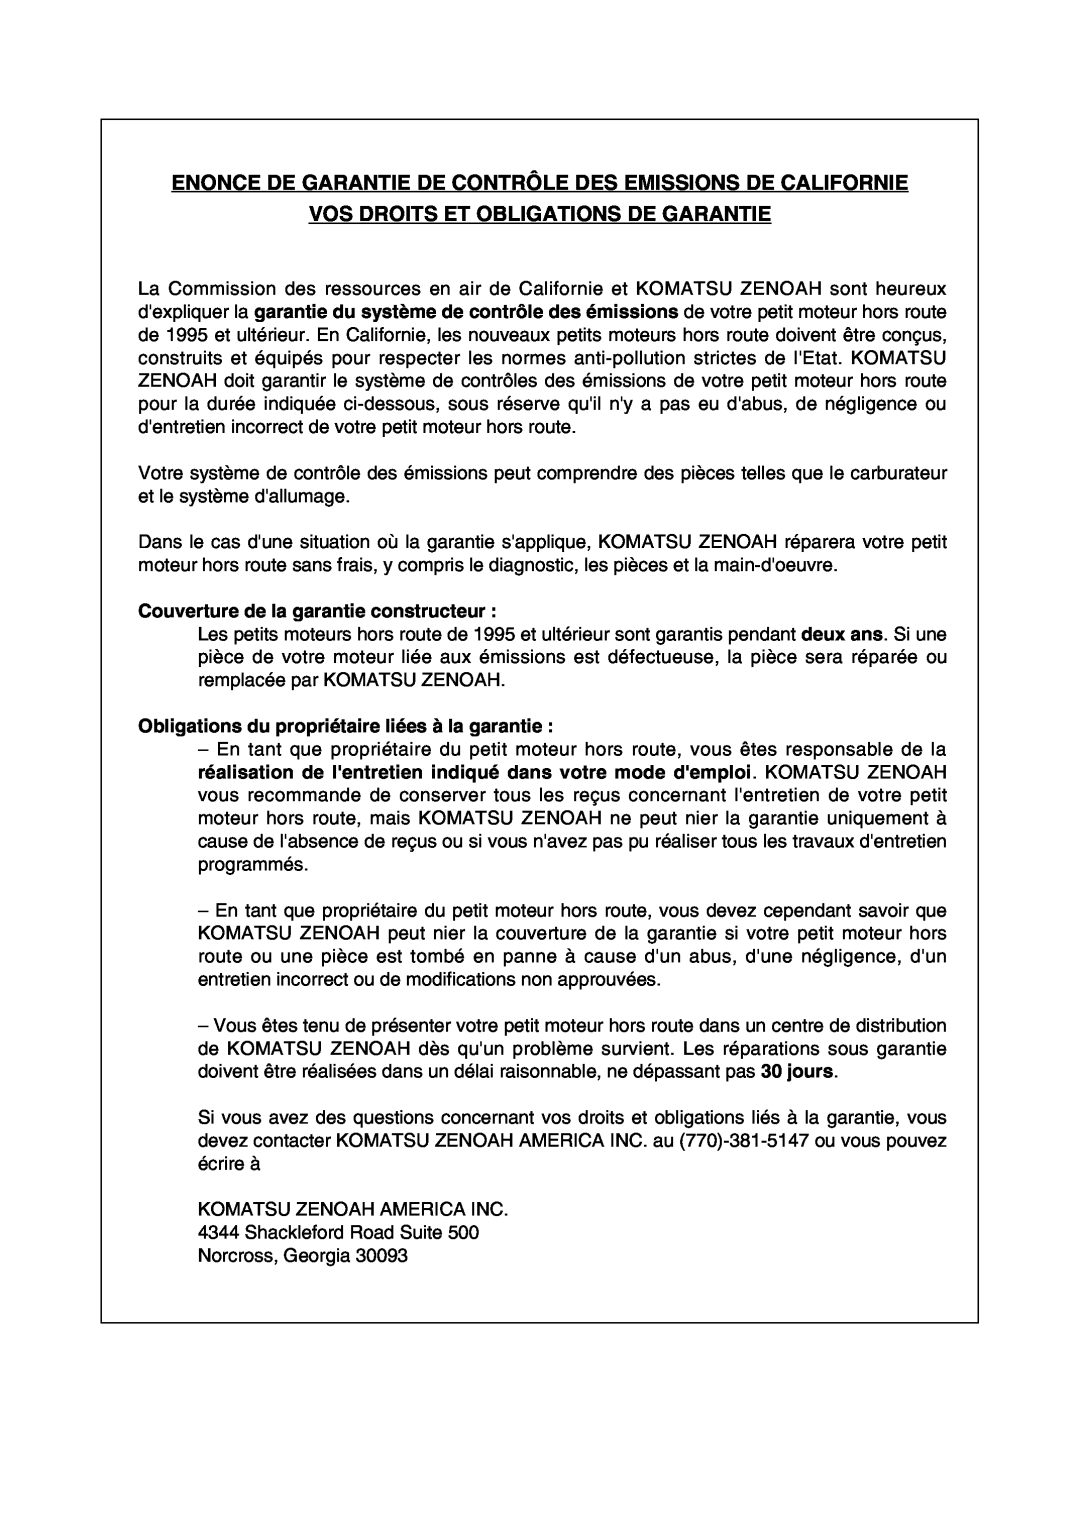 RedMax HBZ2601 manual Vos Droits Et Obligations De Garantie, Couverture de la garantie constructeur 